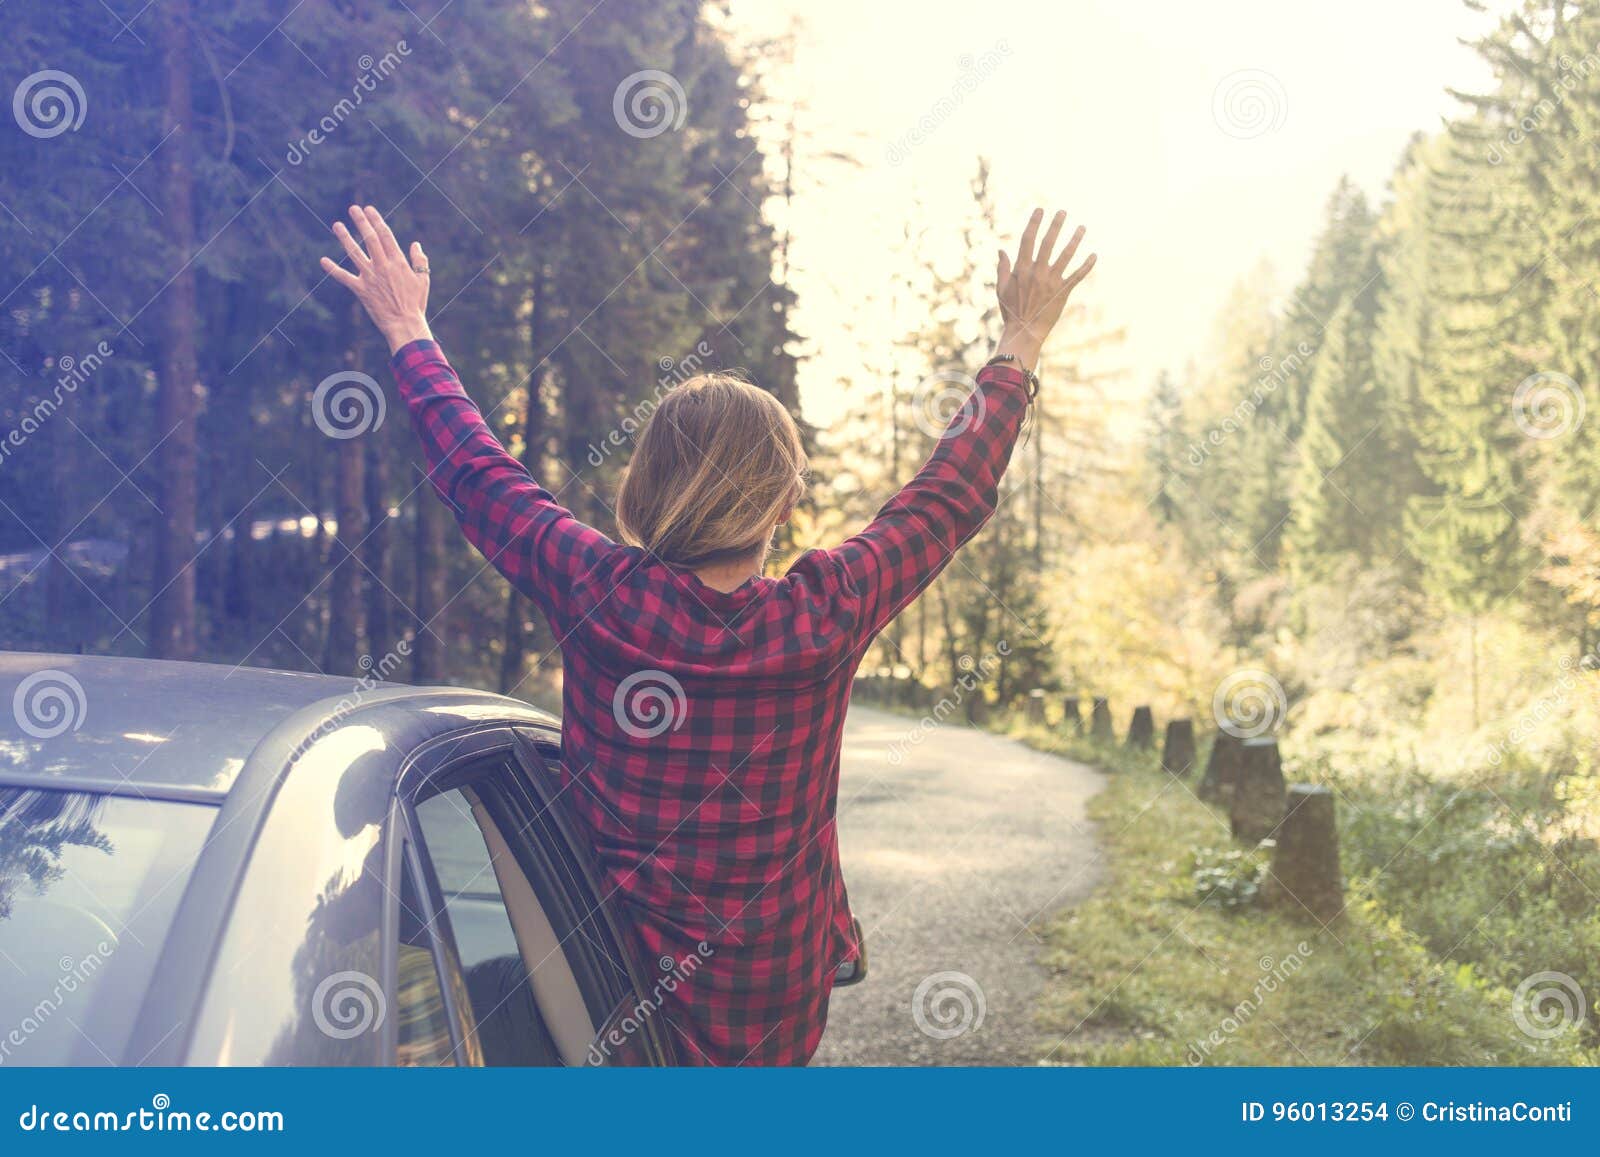 少妇举她的胳膊对倾斜在车窗外面的天空在旅行期间